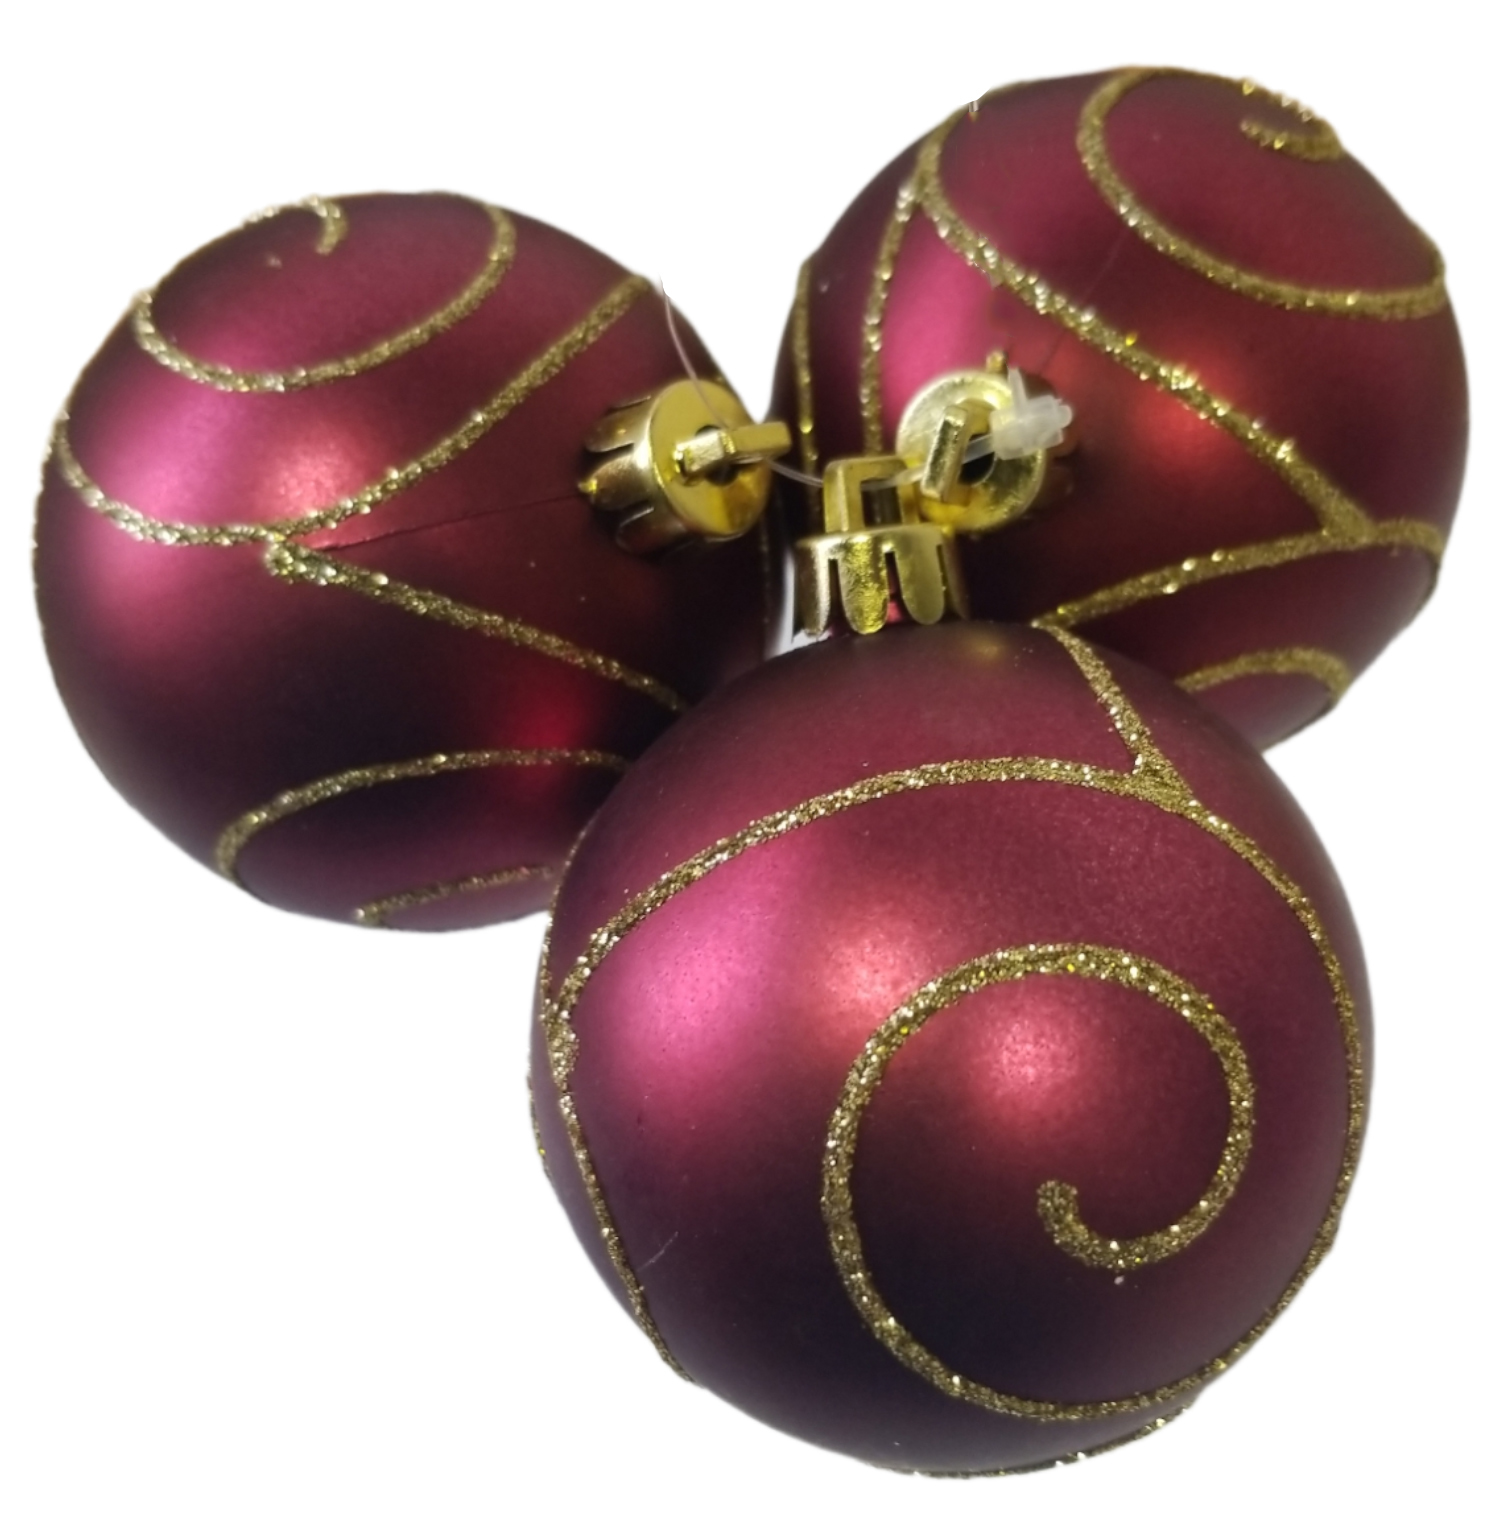 Dekorace vánoční - koule rudá 3ks